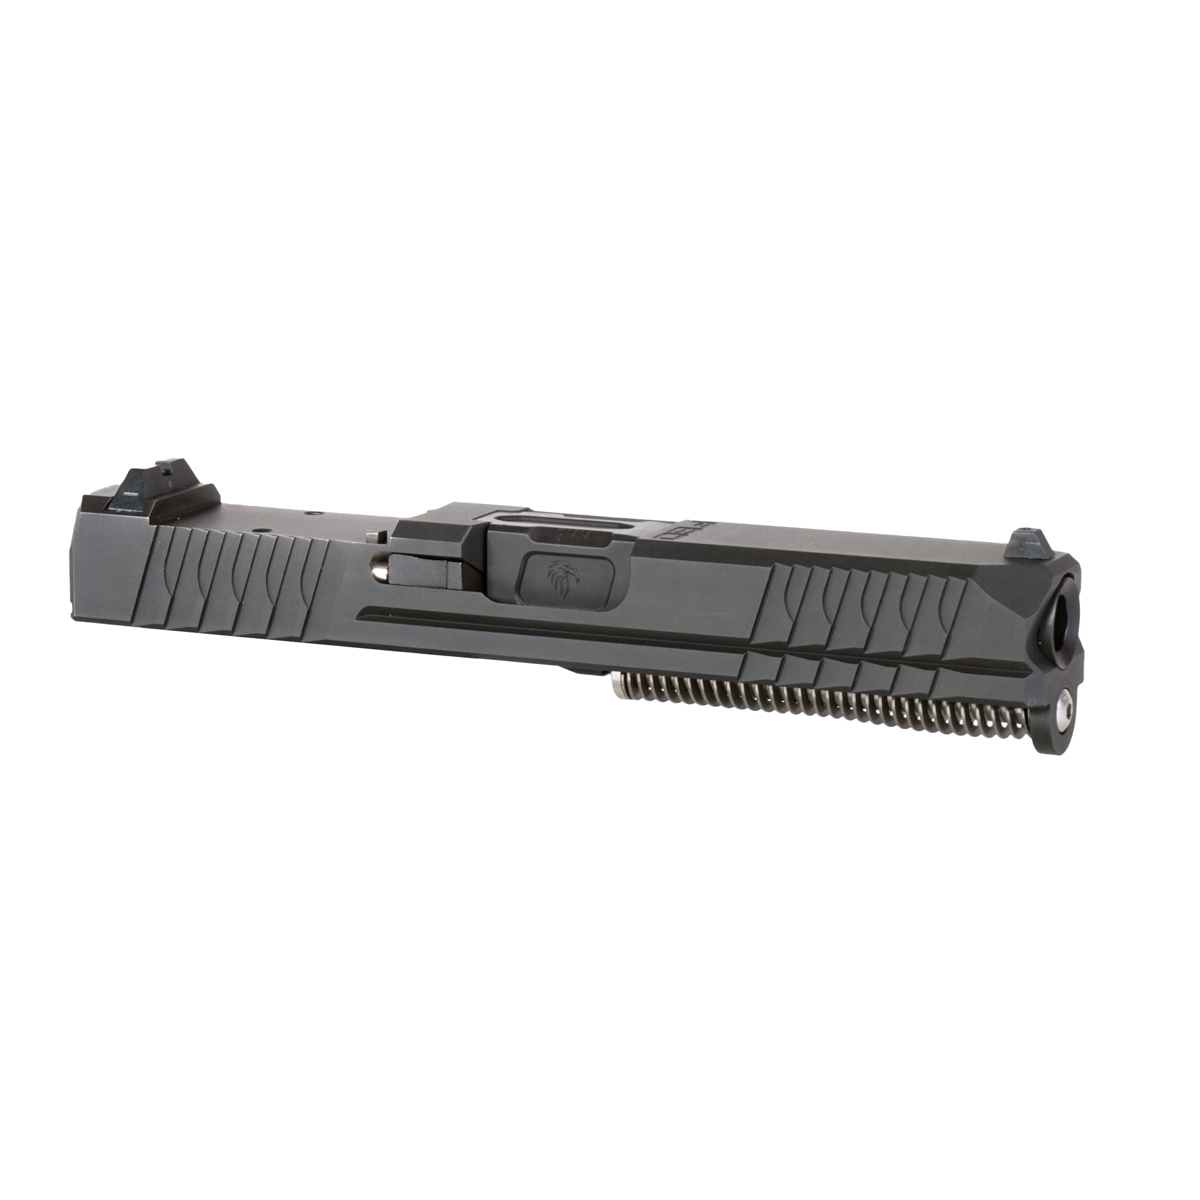 DTT 'Taylor' 9mm Complete Slide Kit - Glock 19 Gen 1-3 Compatible